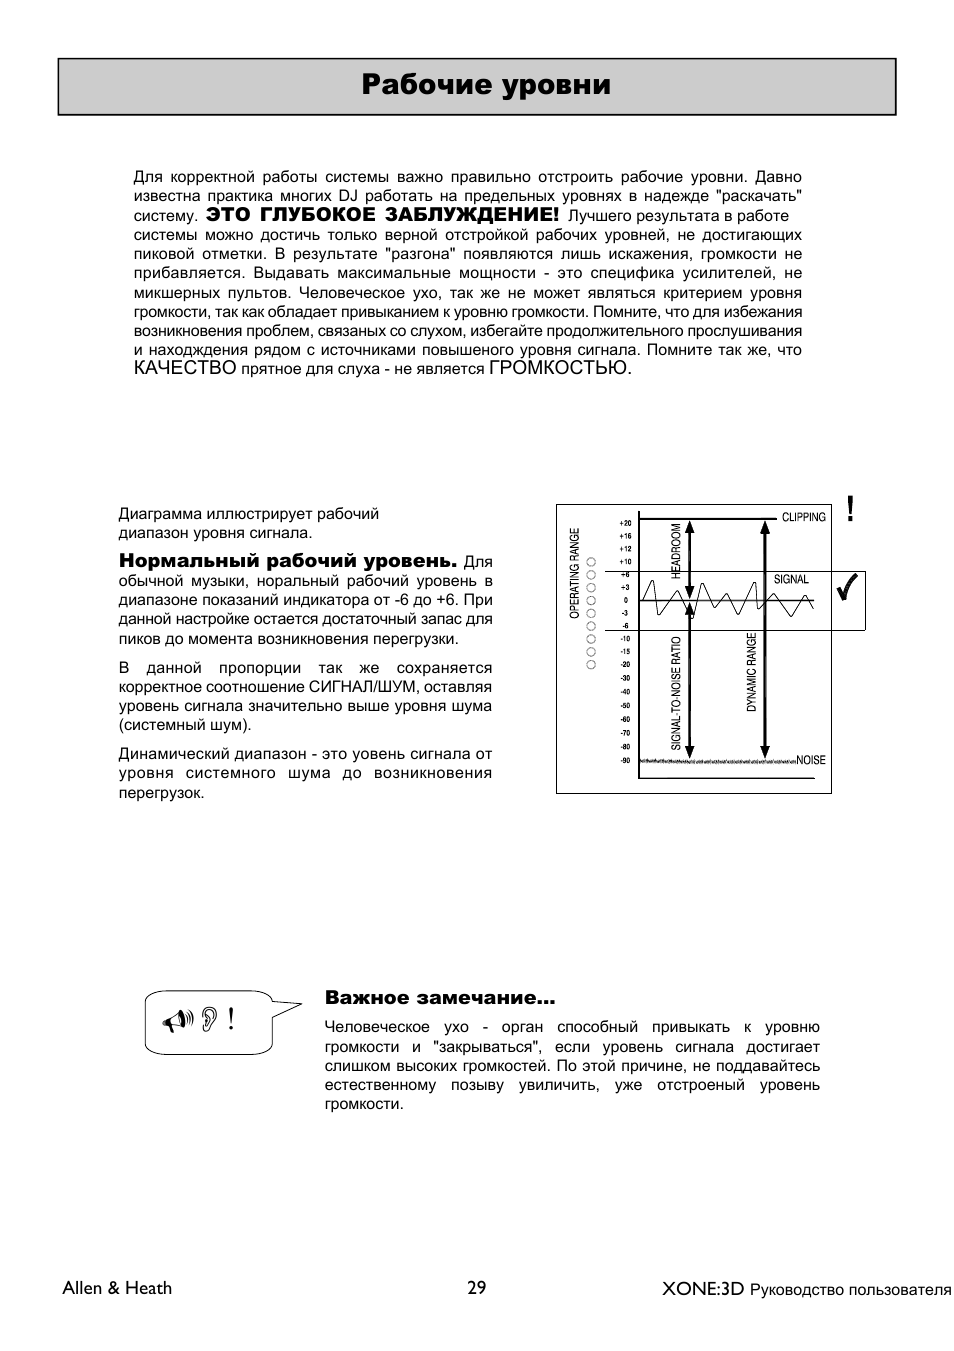 XONE 3d_ap6388_1 User Manual | Page 29 / 43